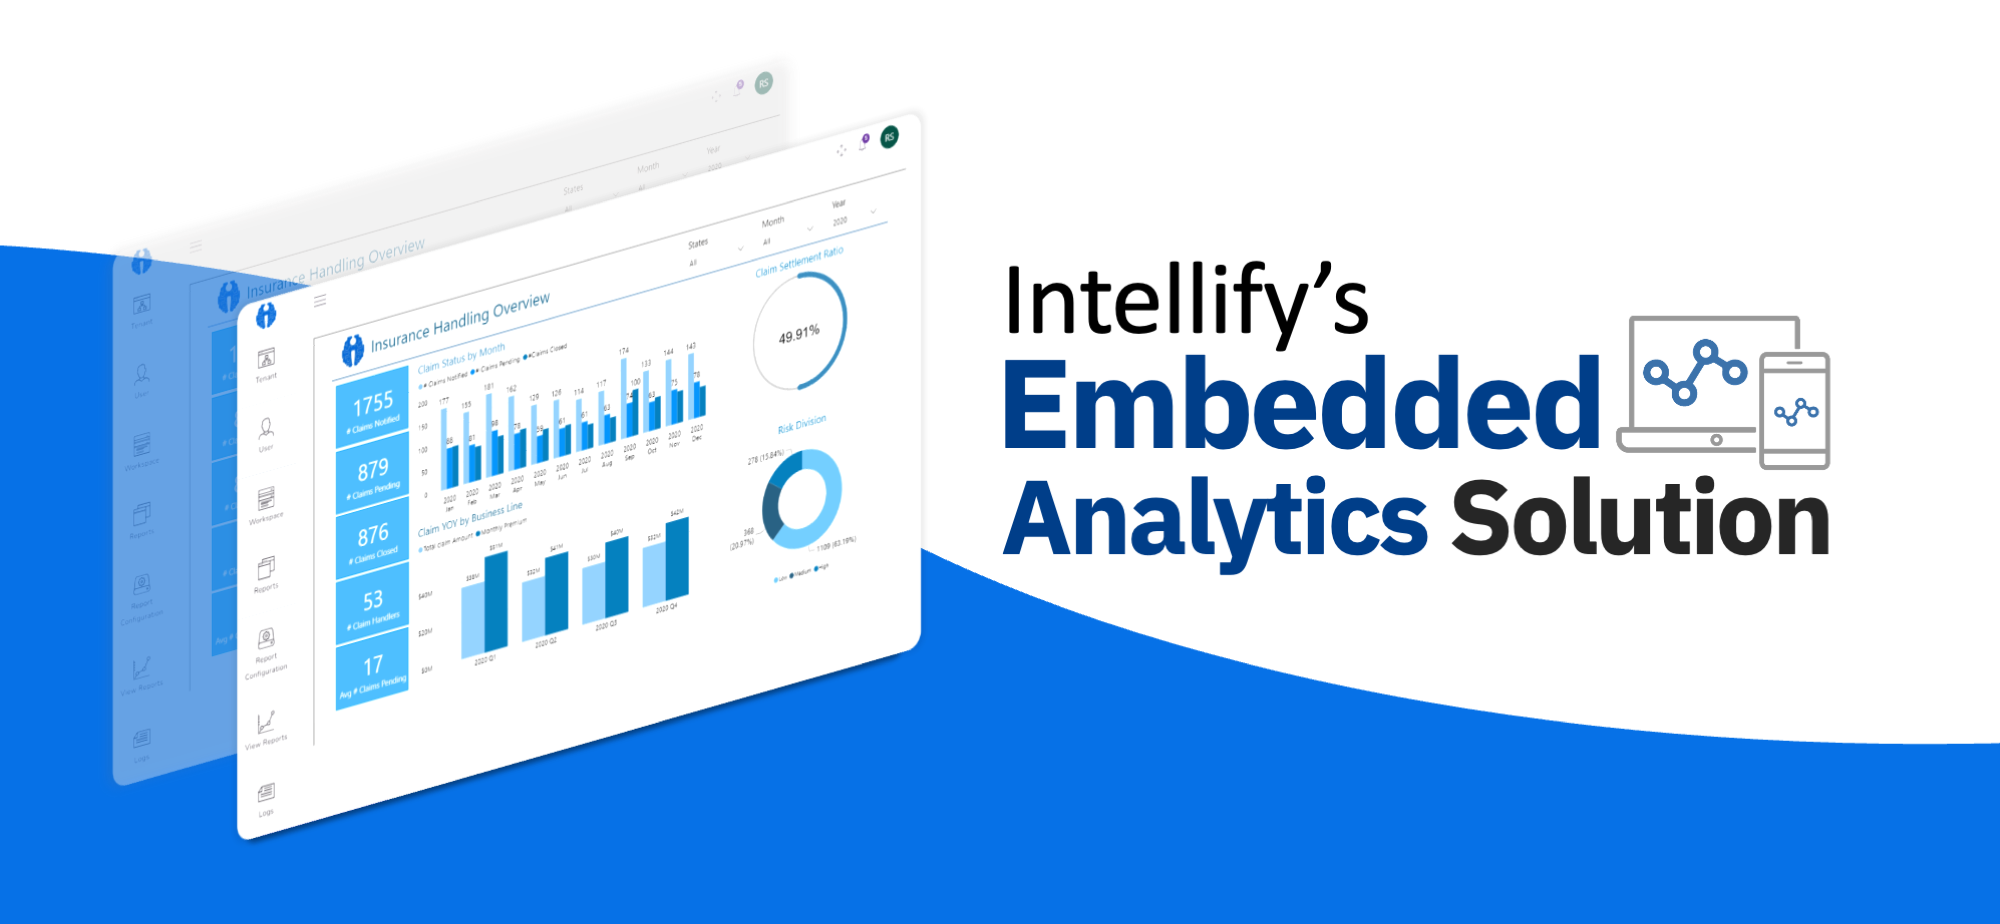 Intellify’s Embedded Analytics Solution